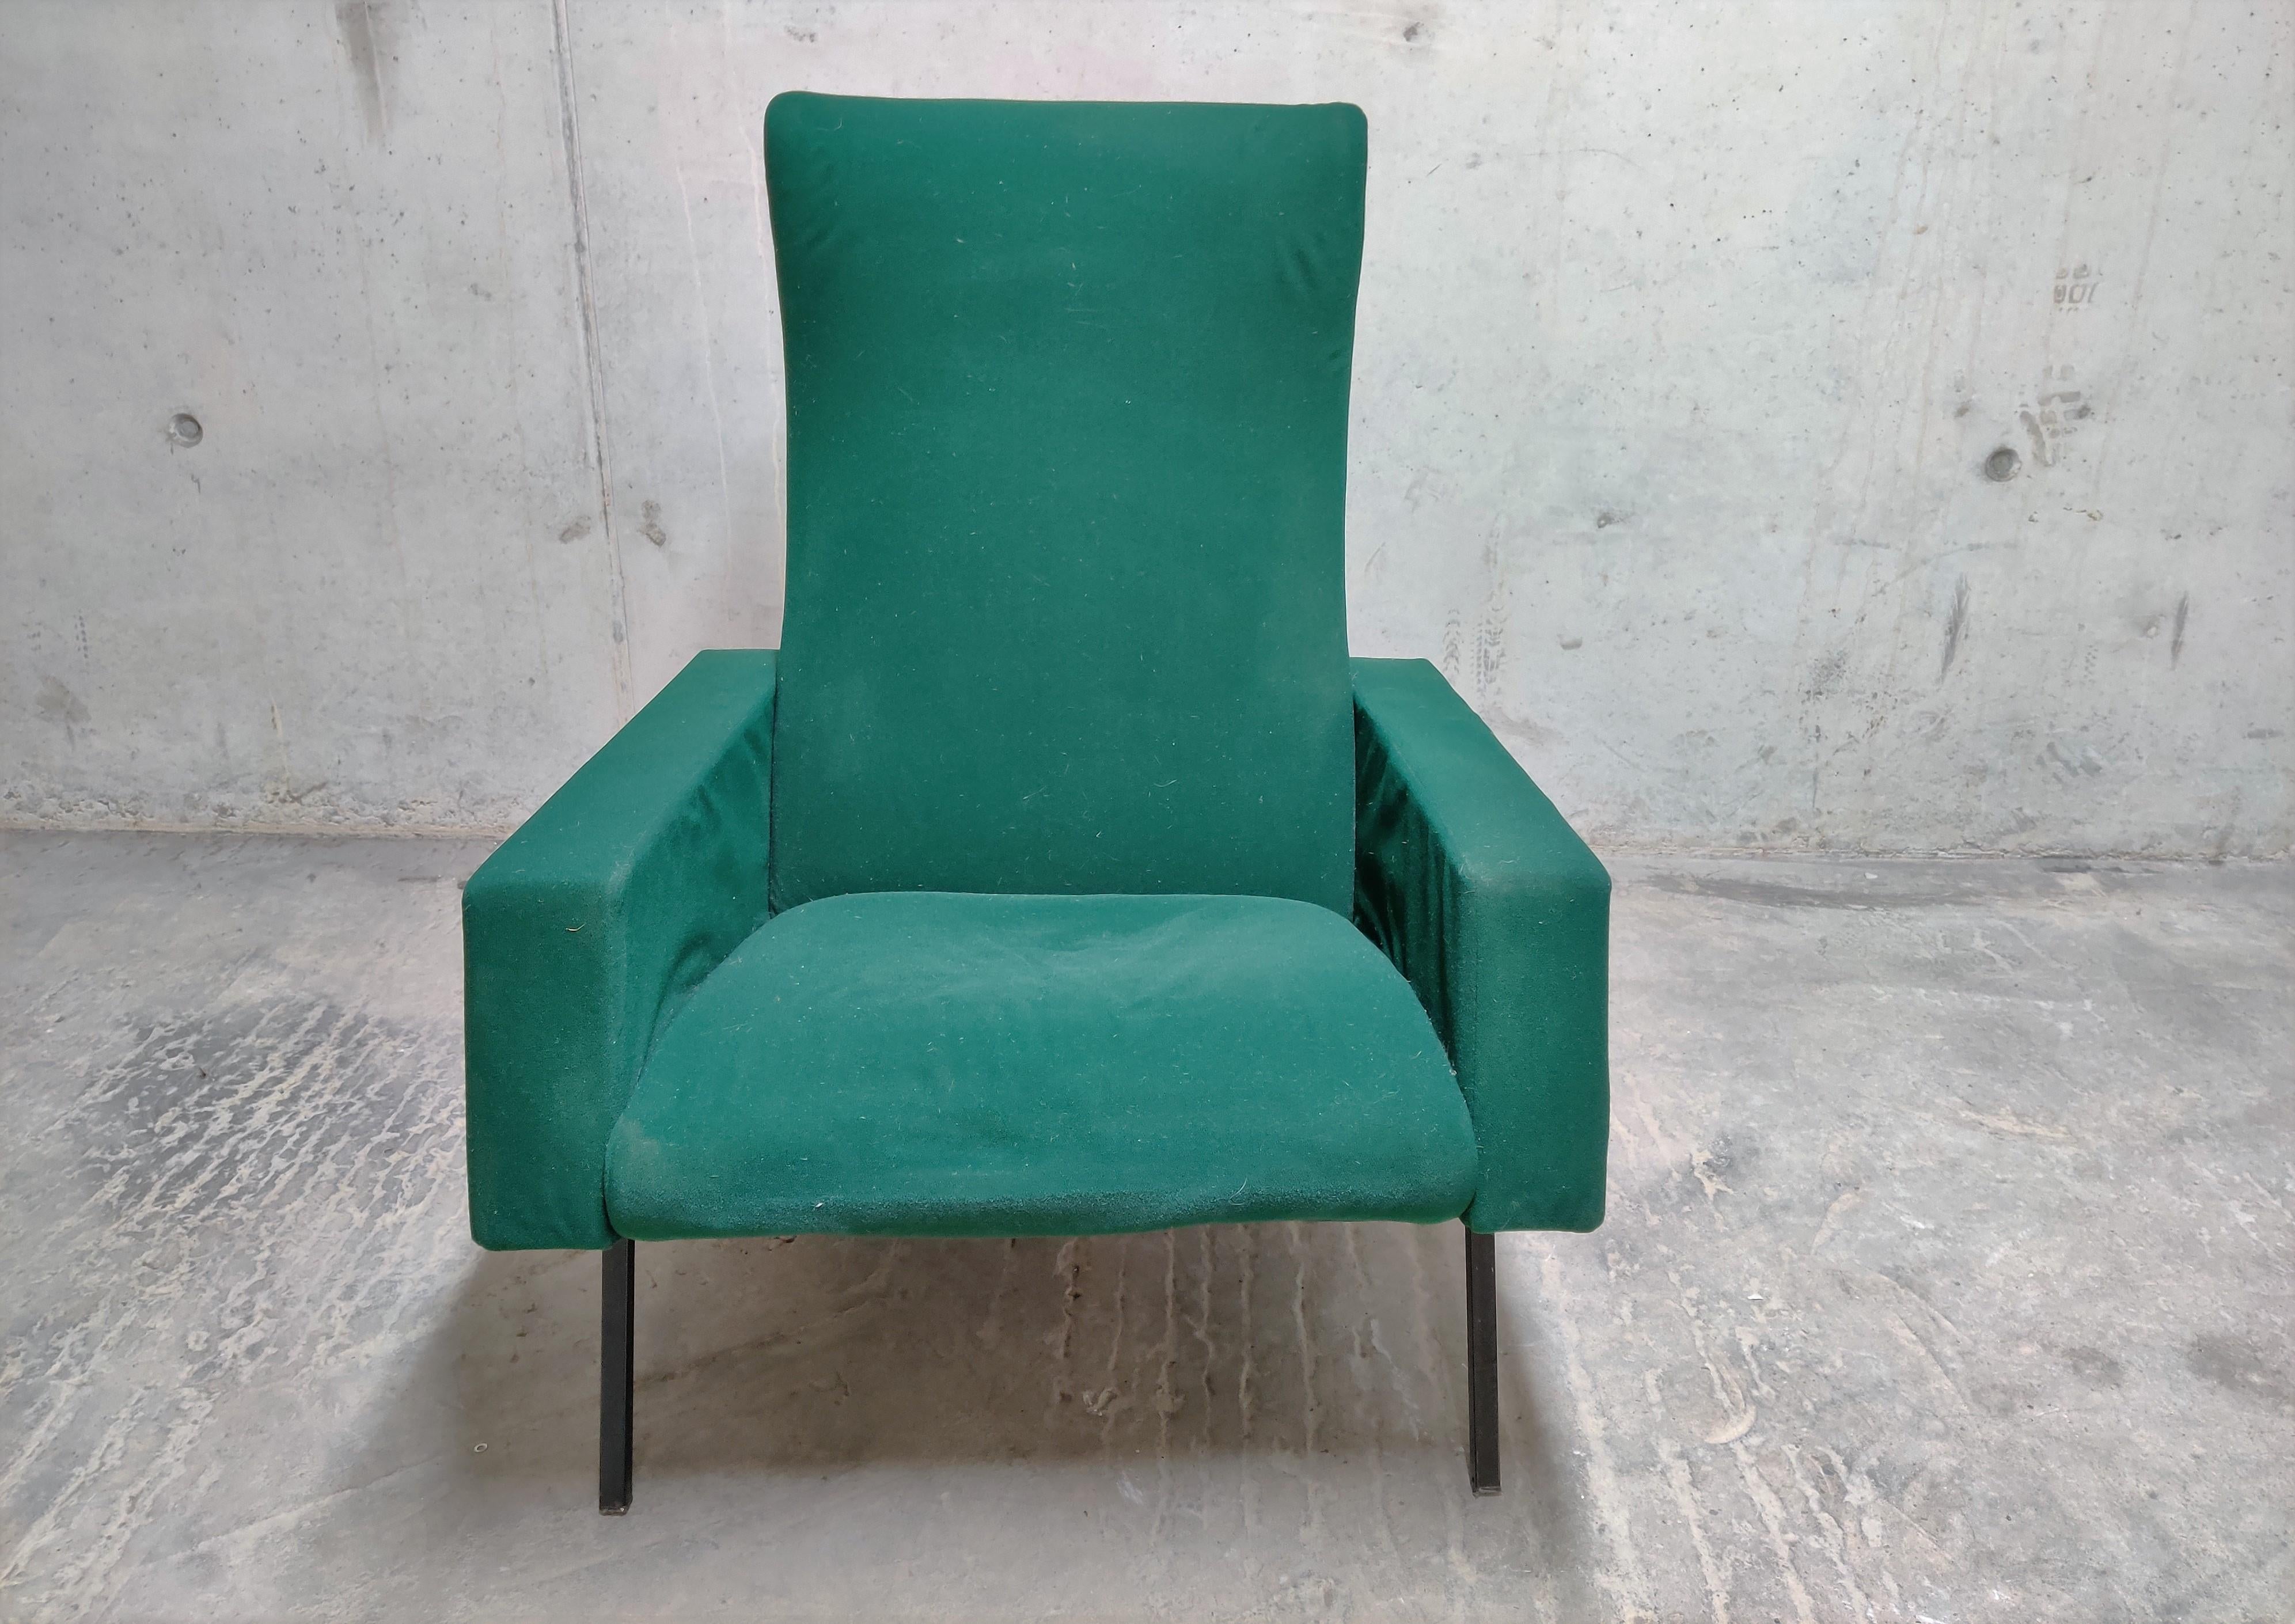 Chaise longue en tissu vert modèle 'Trelax' de Pierre Guariche pour Meurop.

Le fauteuil inclinable est doté d'un repose-pieds, ce qui vous permet d'avoir une position très confortable pour vous détendre.

Ce modèle a le même design que les